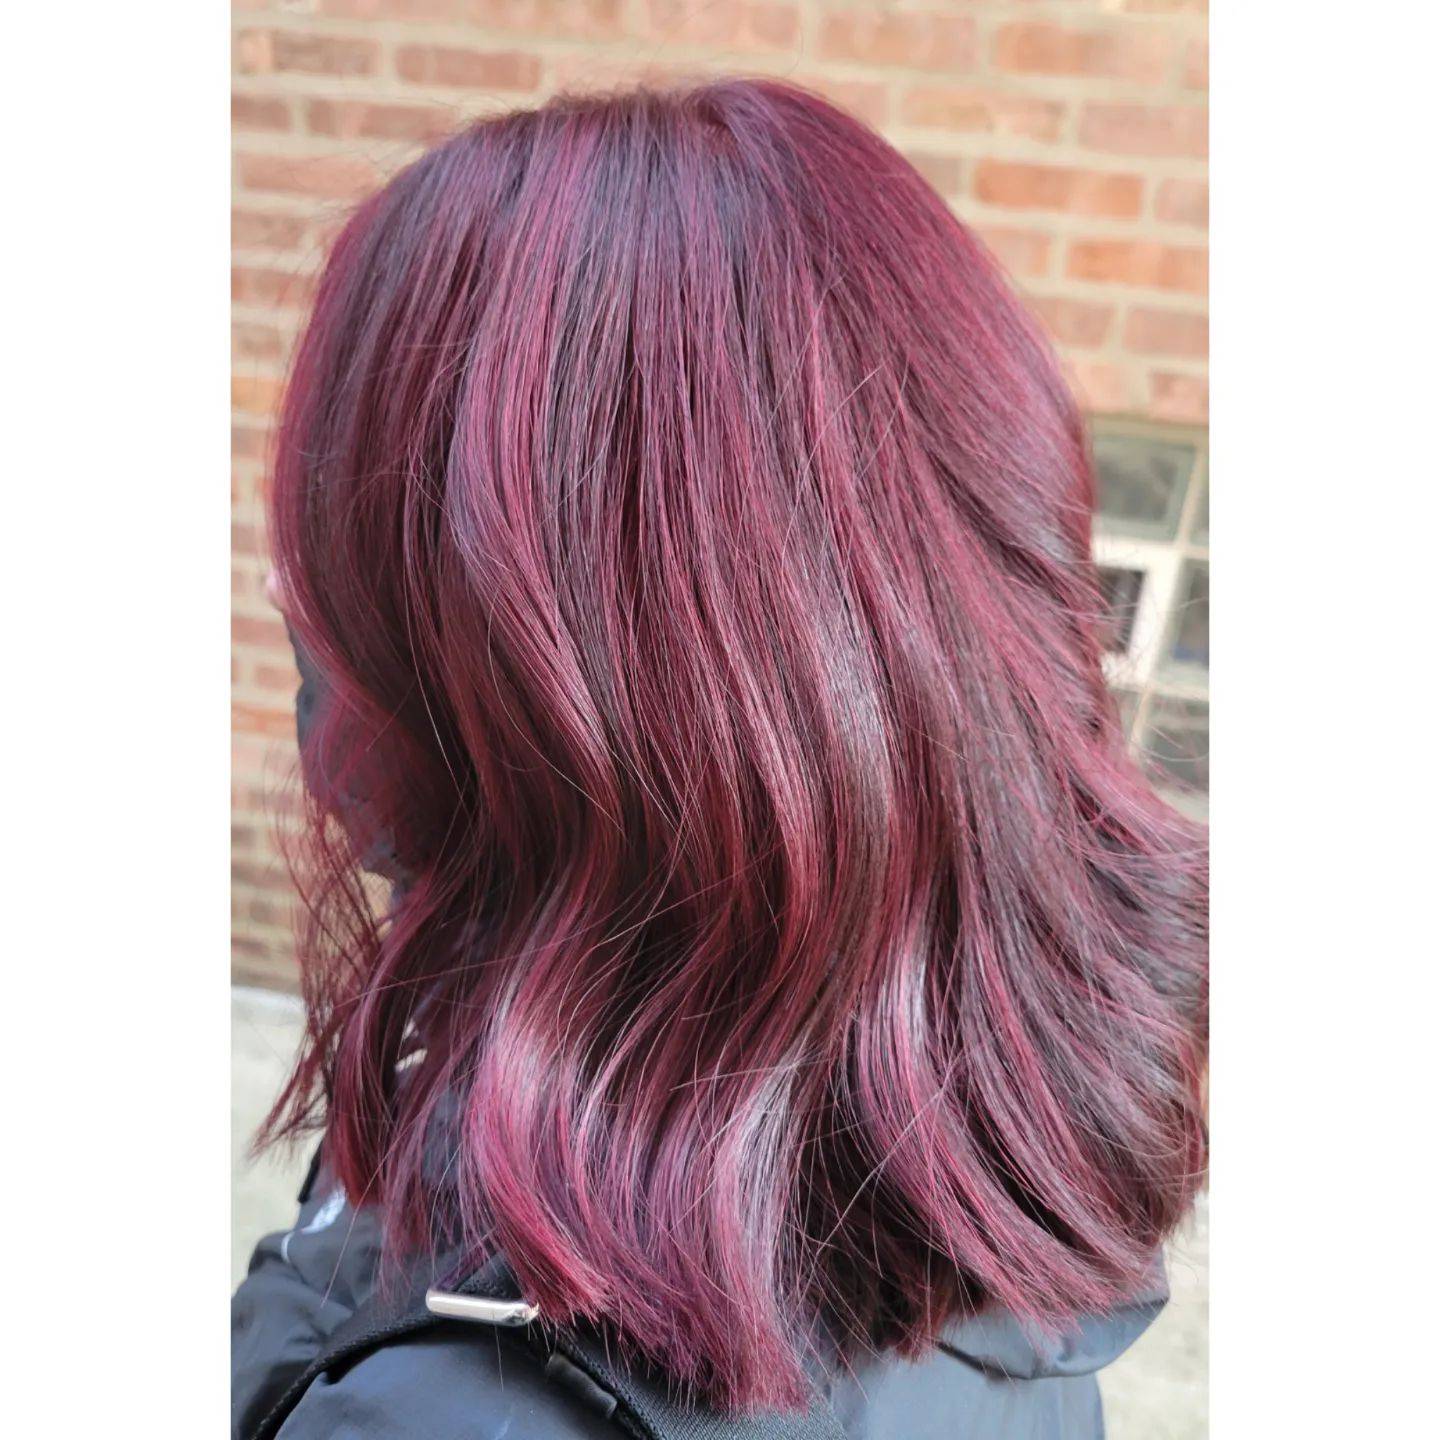 Burgundy hair color 235 burgundy hair color | burgundy hair color for women | burgundy hair color highlights Burgundy Hair Color